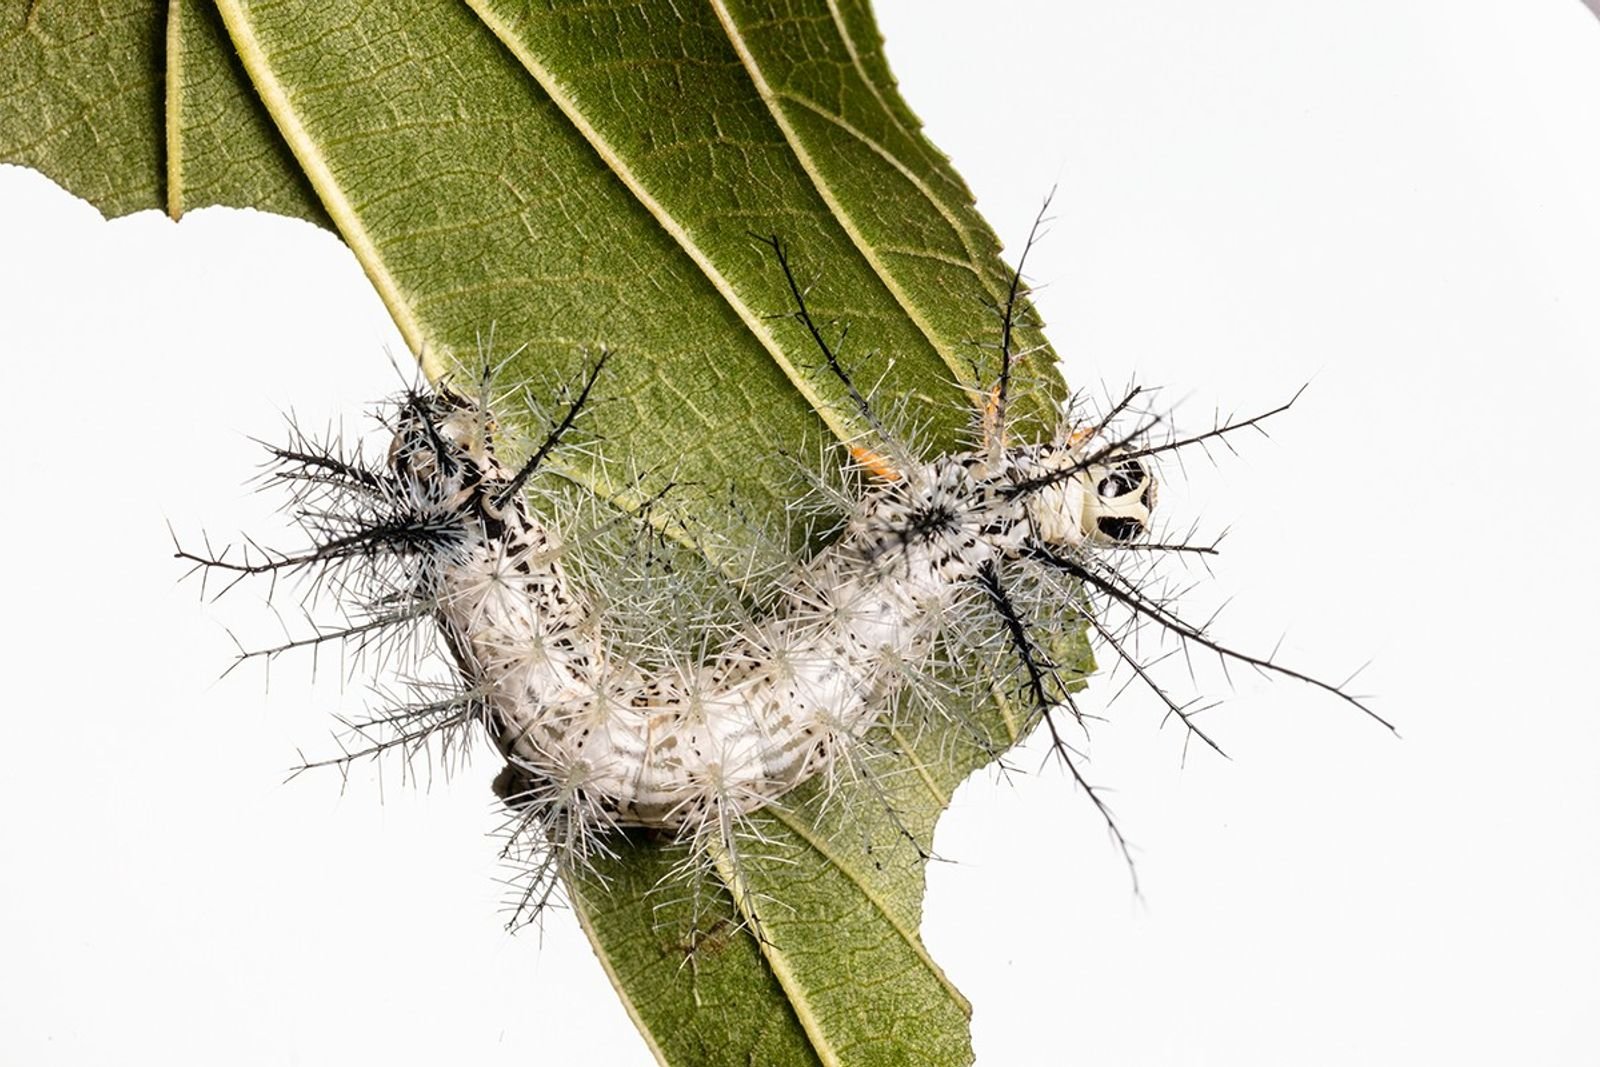 5 wichtige Aufgaben von Insekten (und was in einer Welt ohne sie passieren könnte)